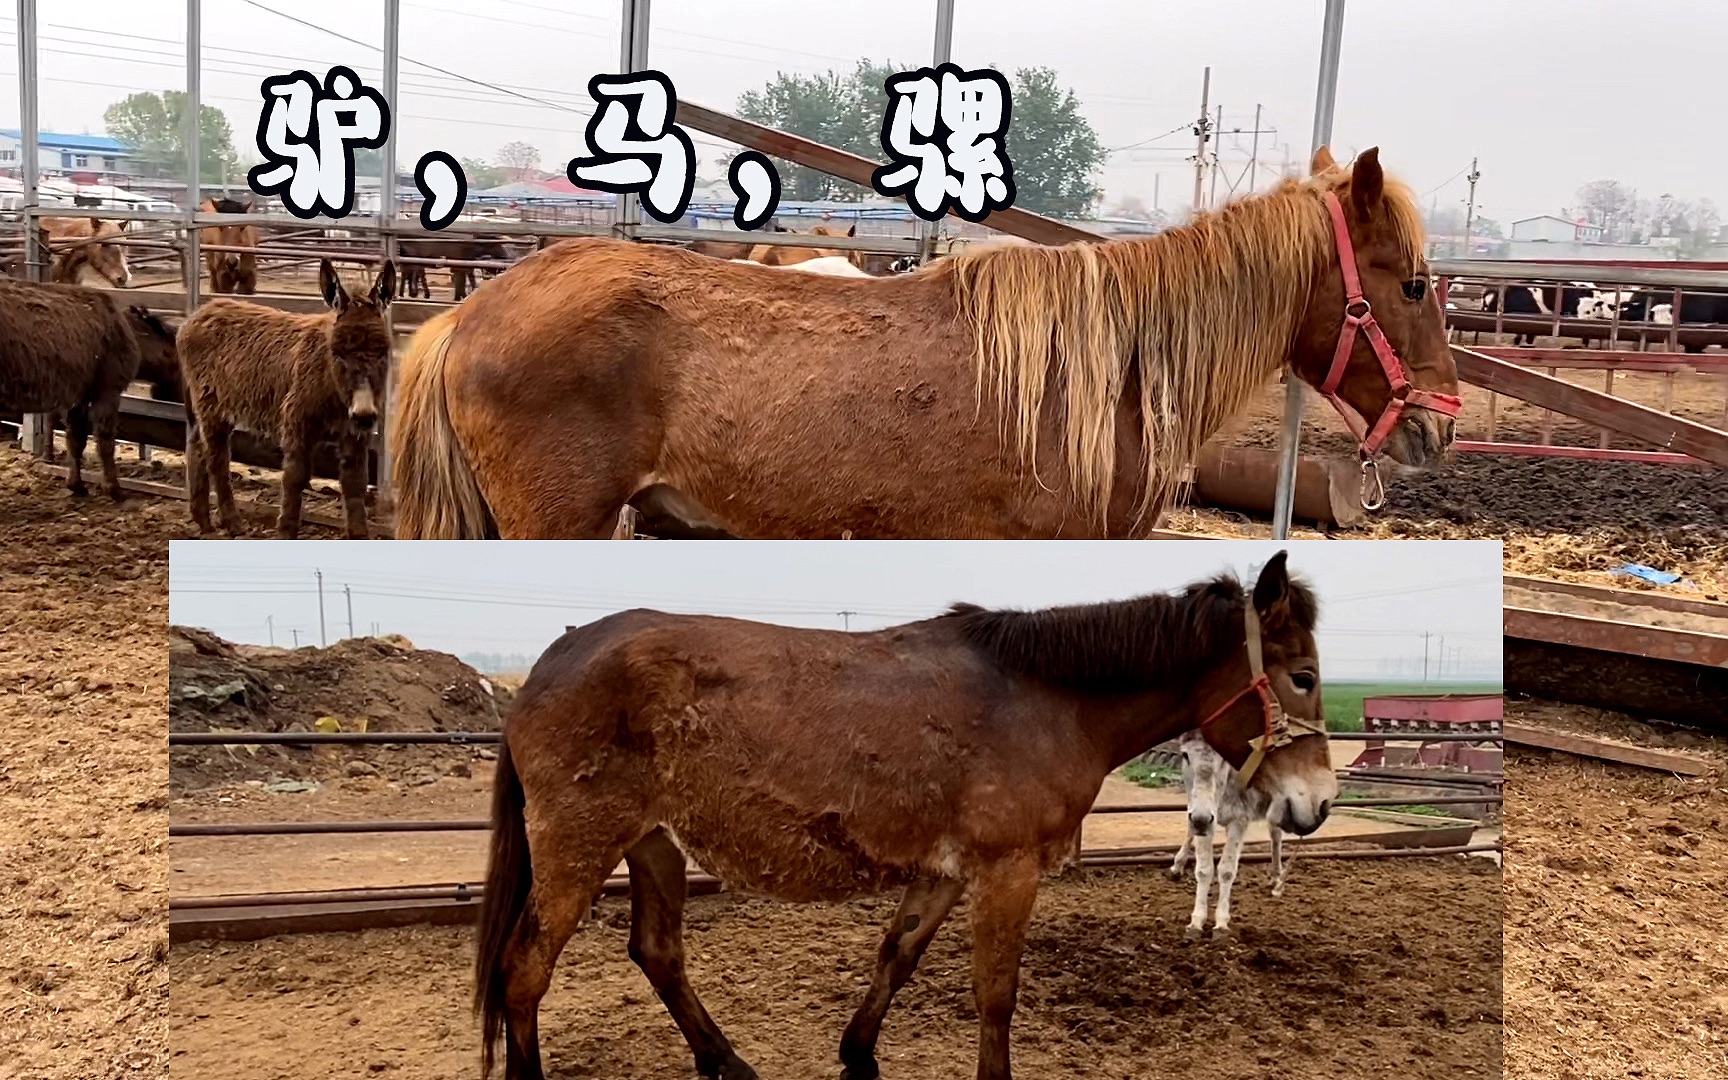 骡子跟马的区别图片图片